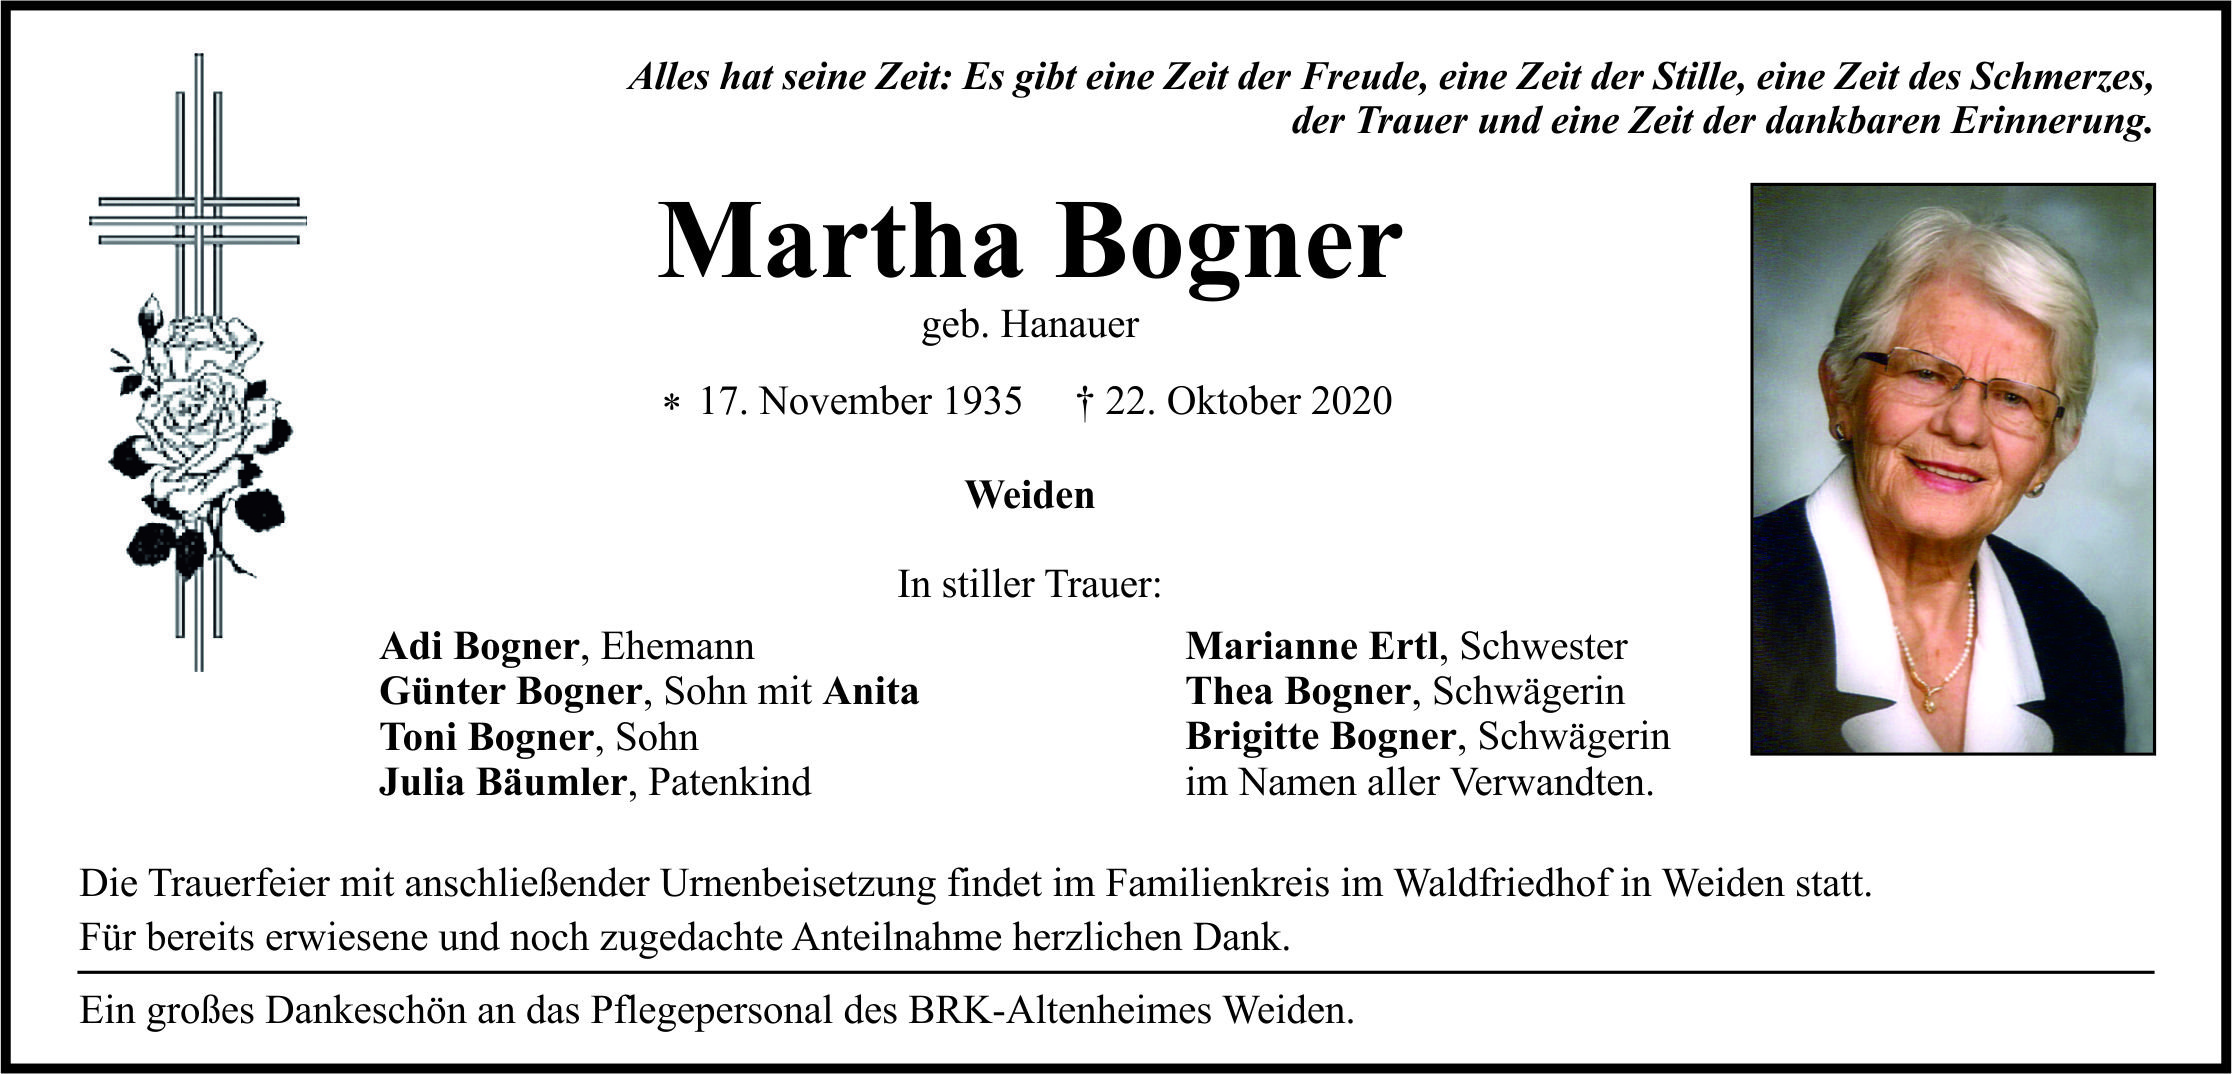 Traueranzeige Martha Bogner, Weiden